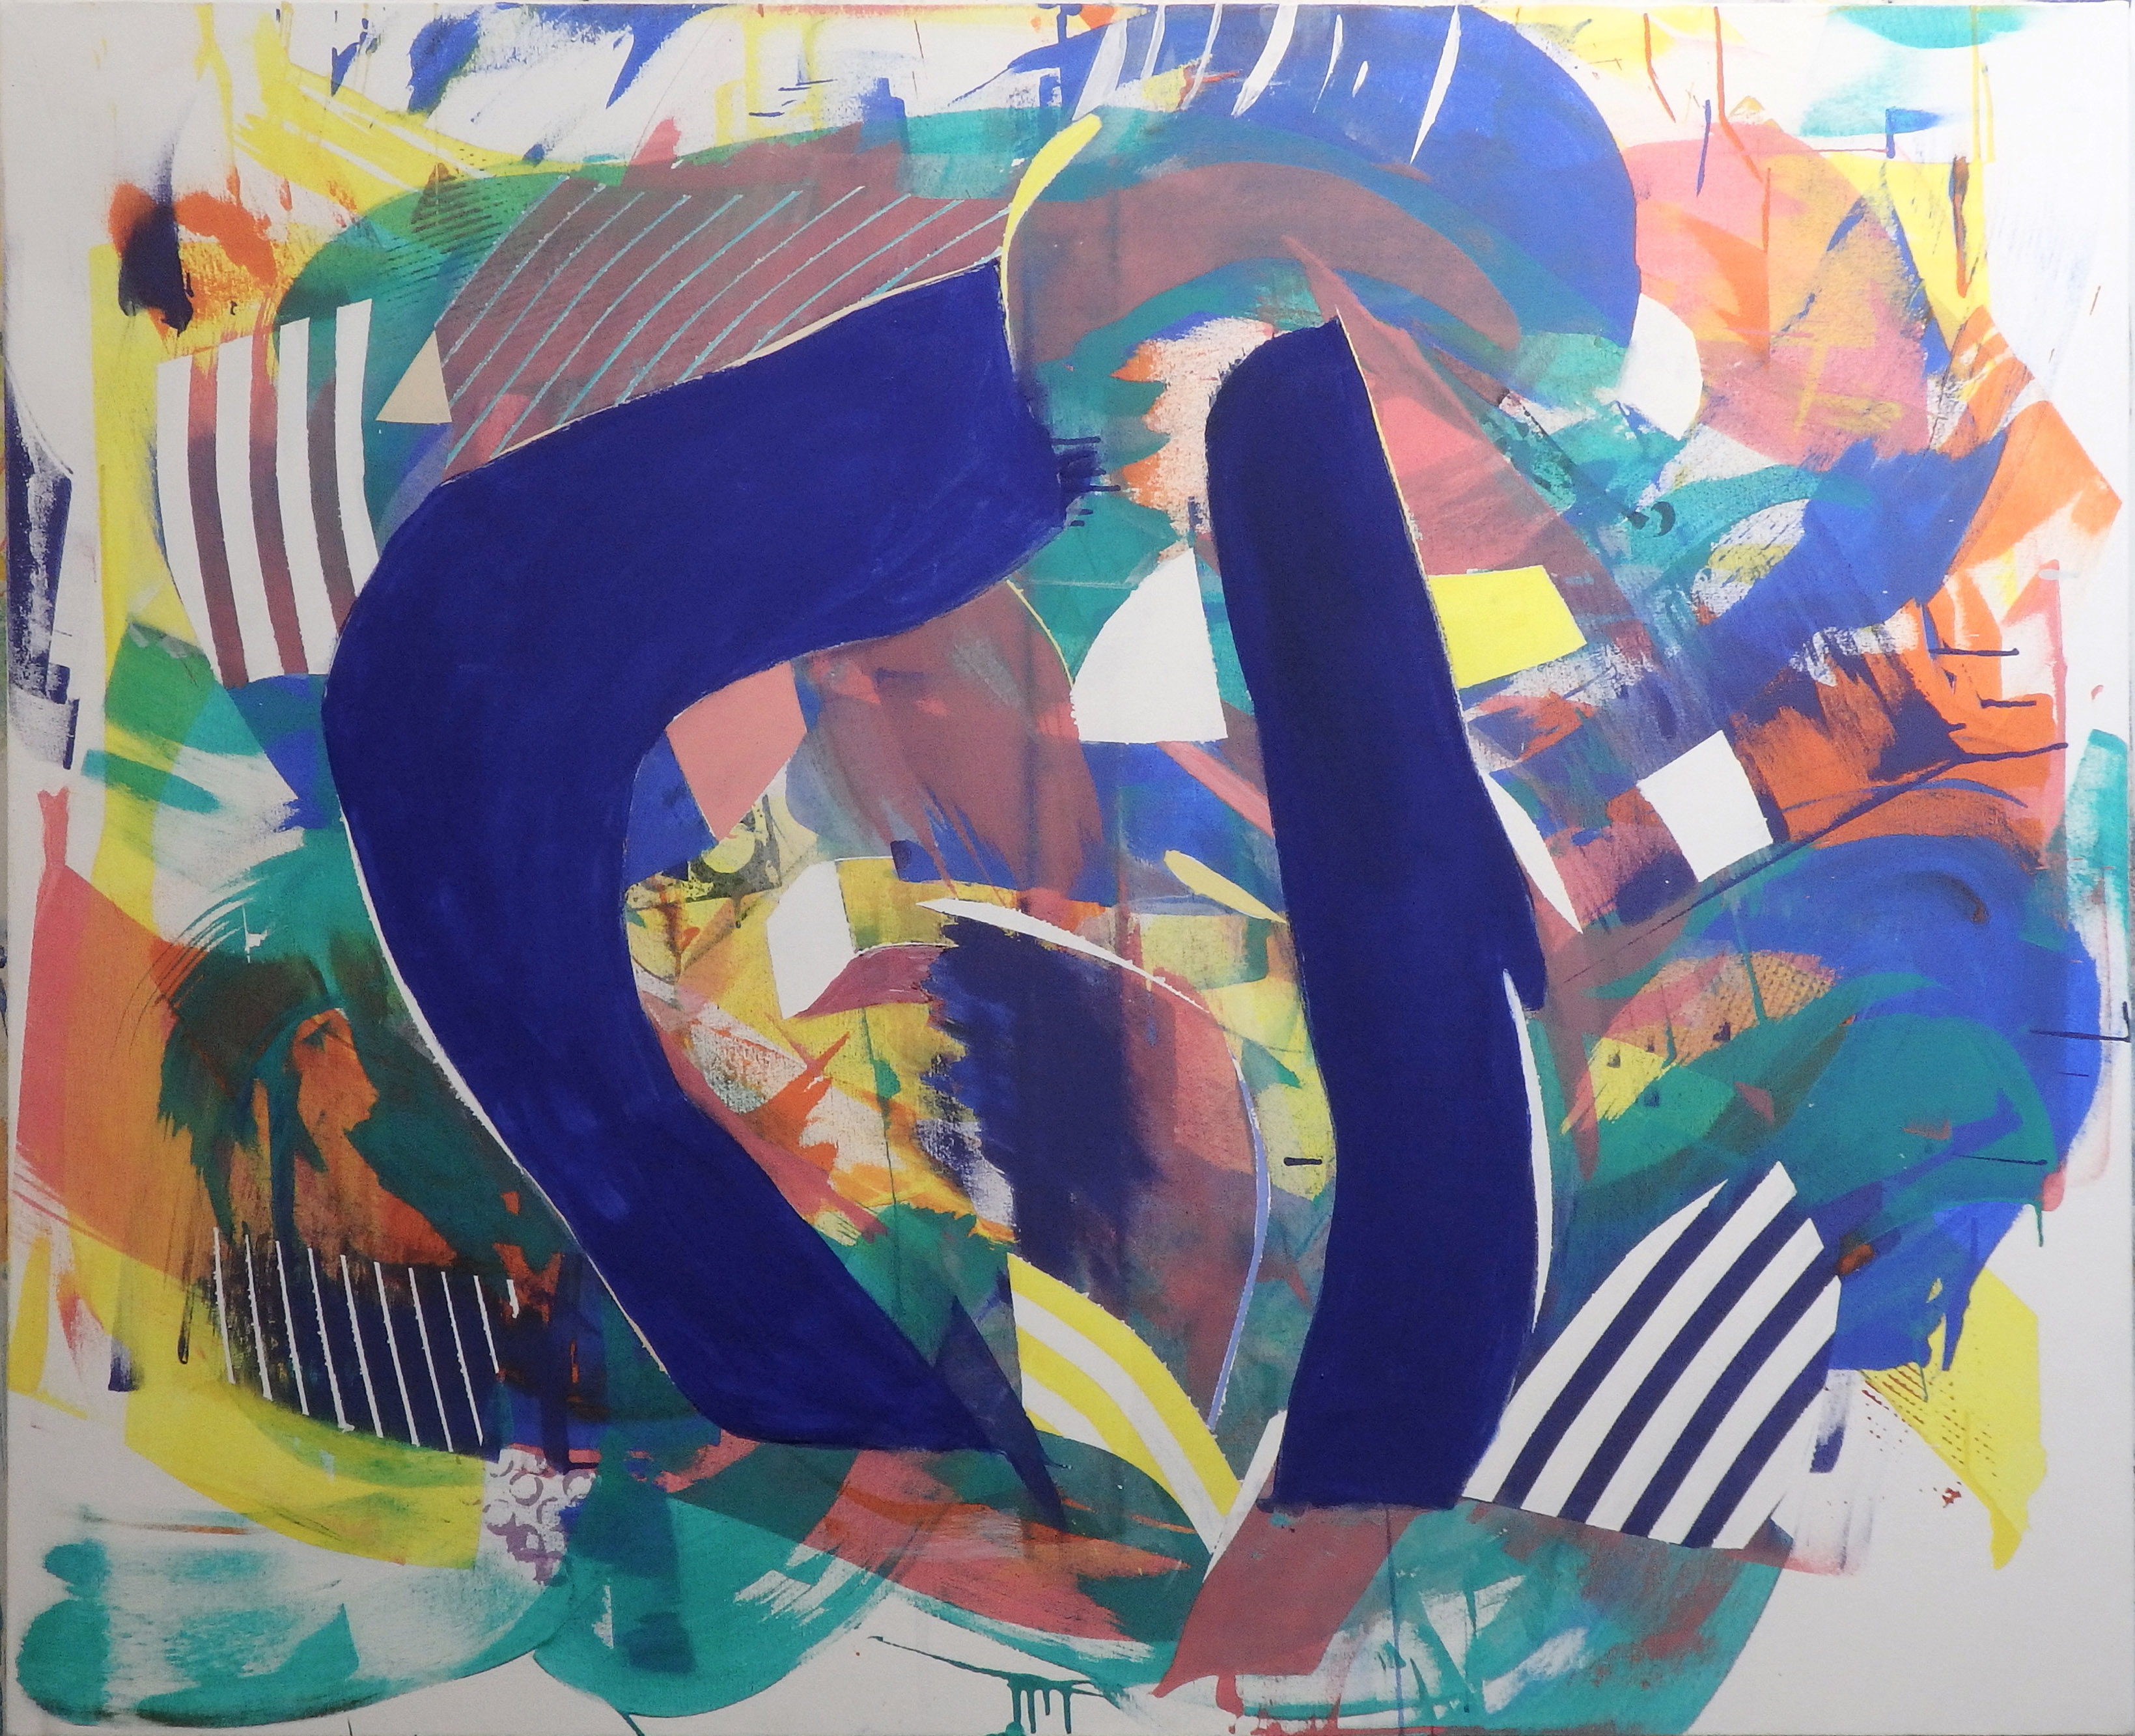 Sesc-SC - Escola Sesc: Pintura ao ar livre no Projeto “Aquarela”